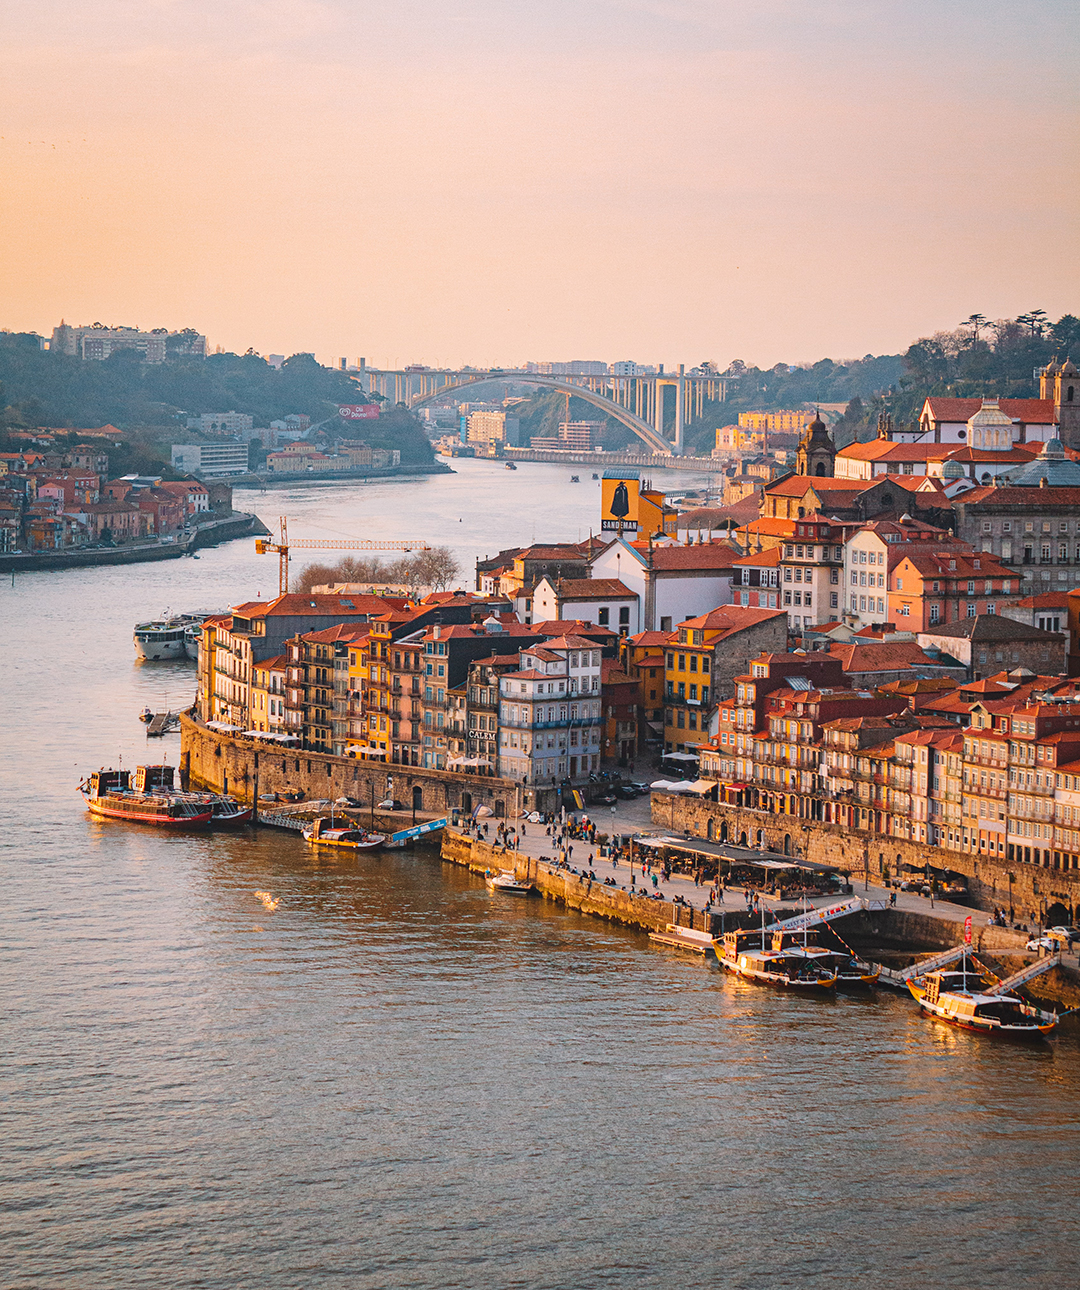 Izlet_v_mesto_Porto_-_Trip_to_the_city_of_Porto_-_Photo_by_Woody_Van_der_Straeten_on_Unsplash.jpg